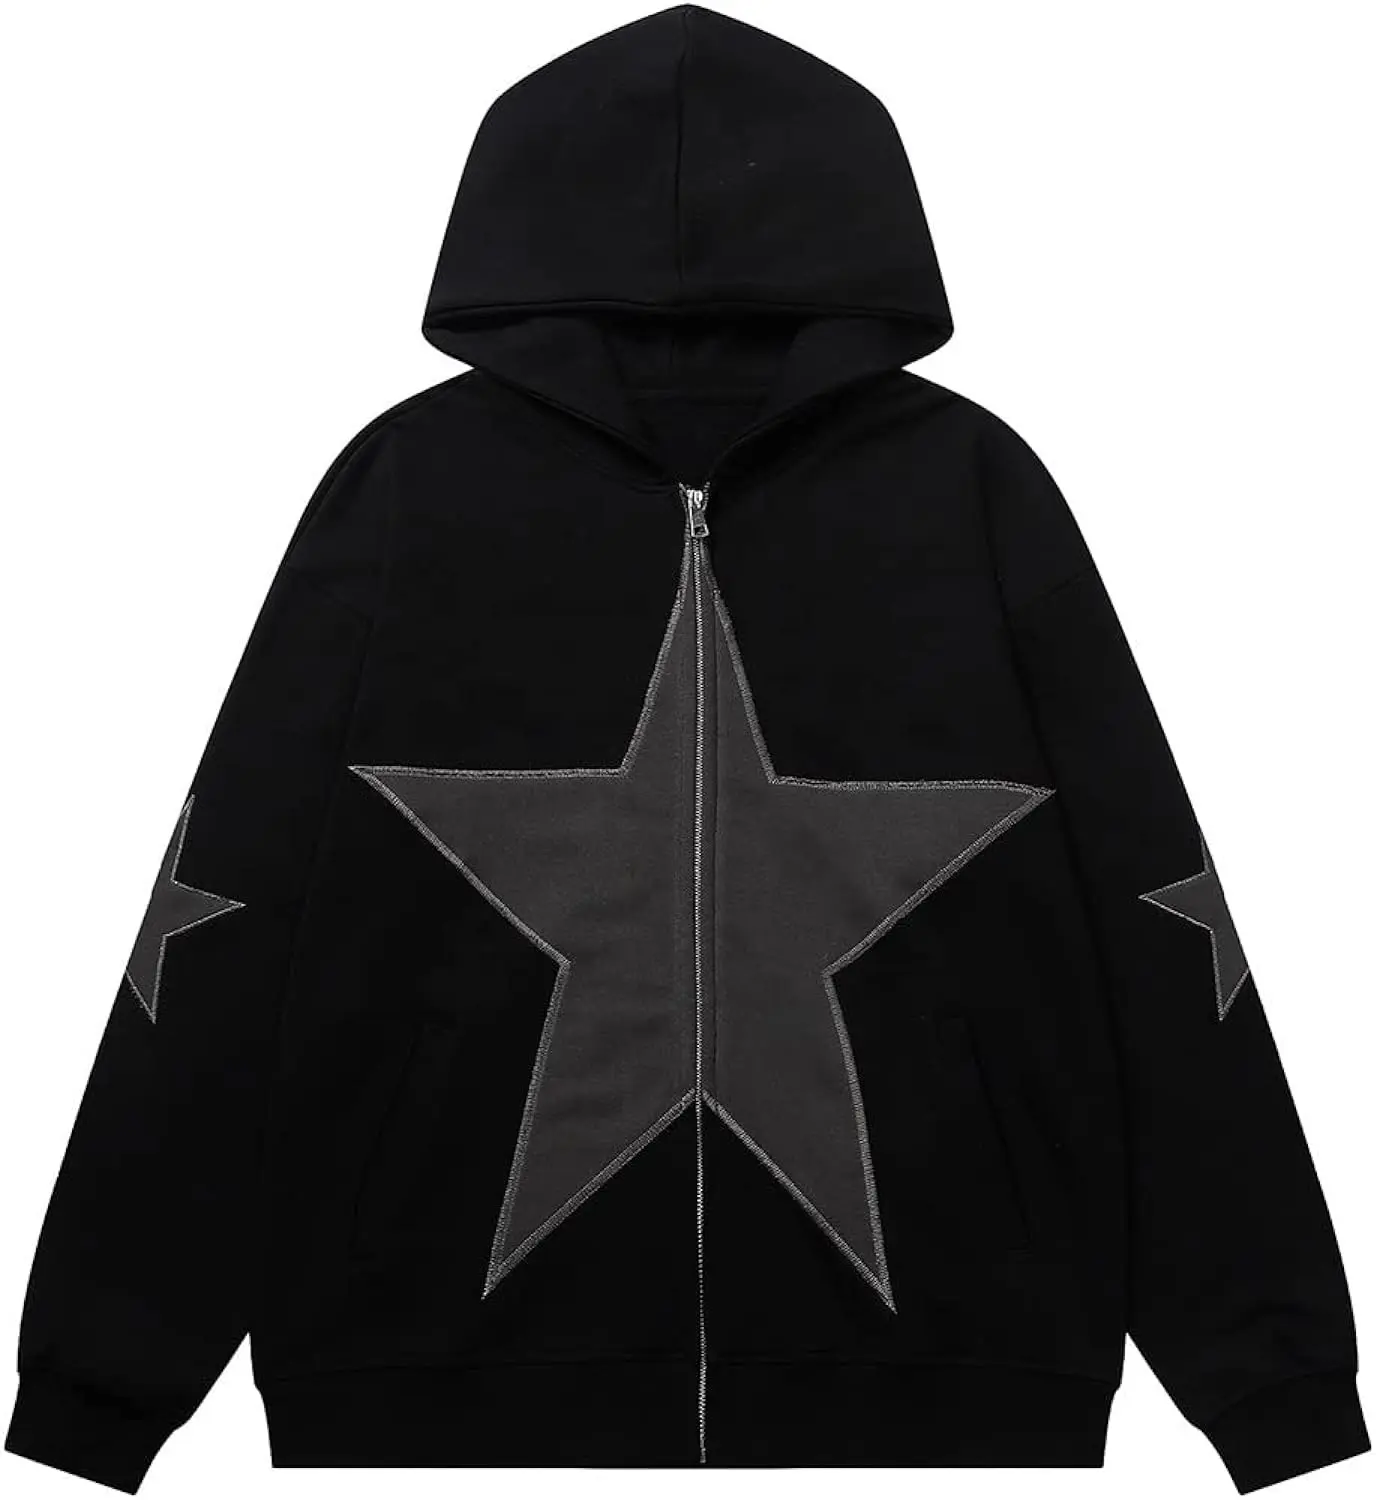 Schwarzer Hoodie mit einem Stern auf der Vorderseite Neues Design Modischer Star Hoodie Bestickte Kapuzen pullover Star Patch Hoodie